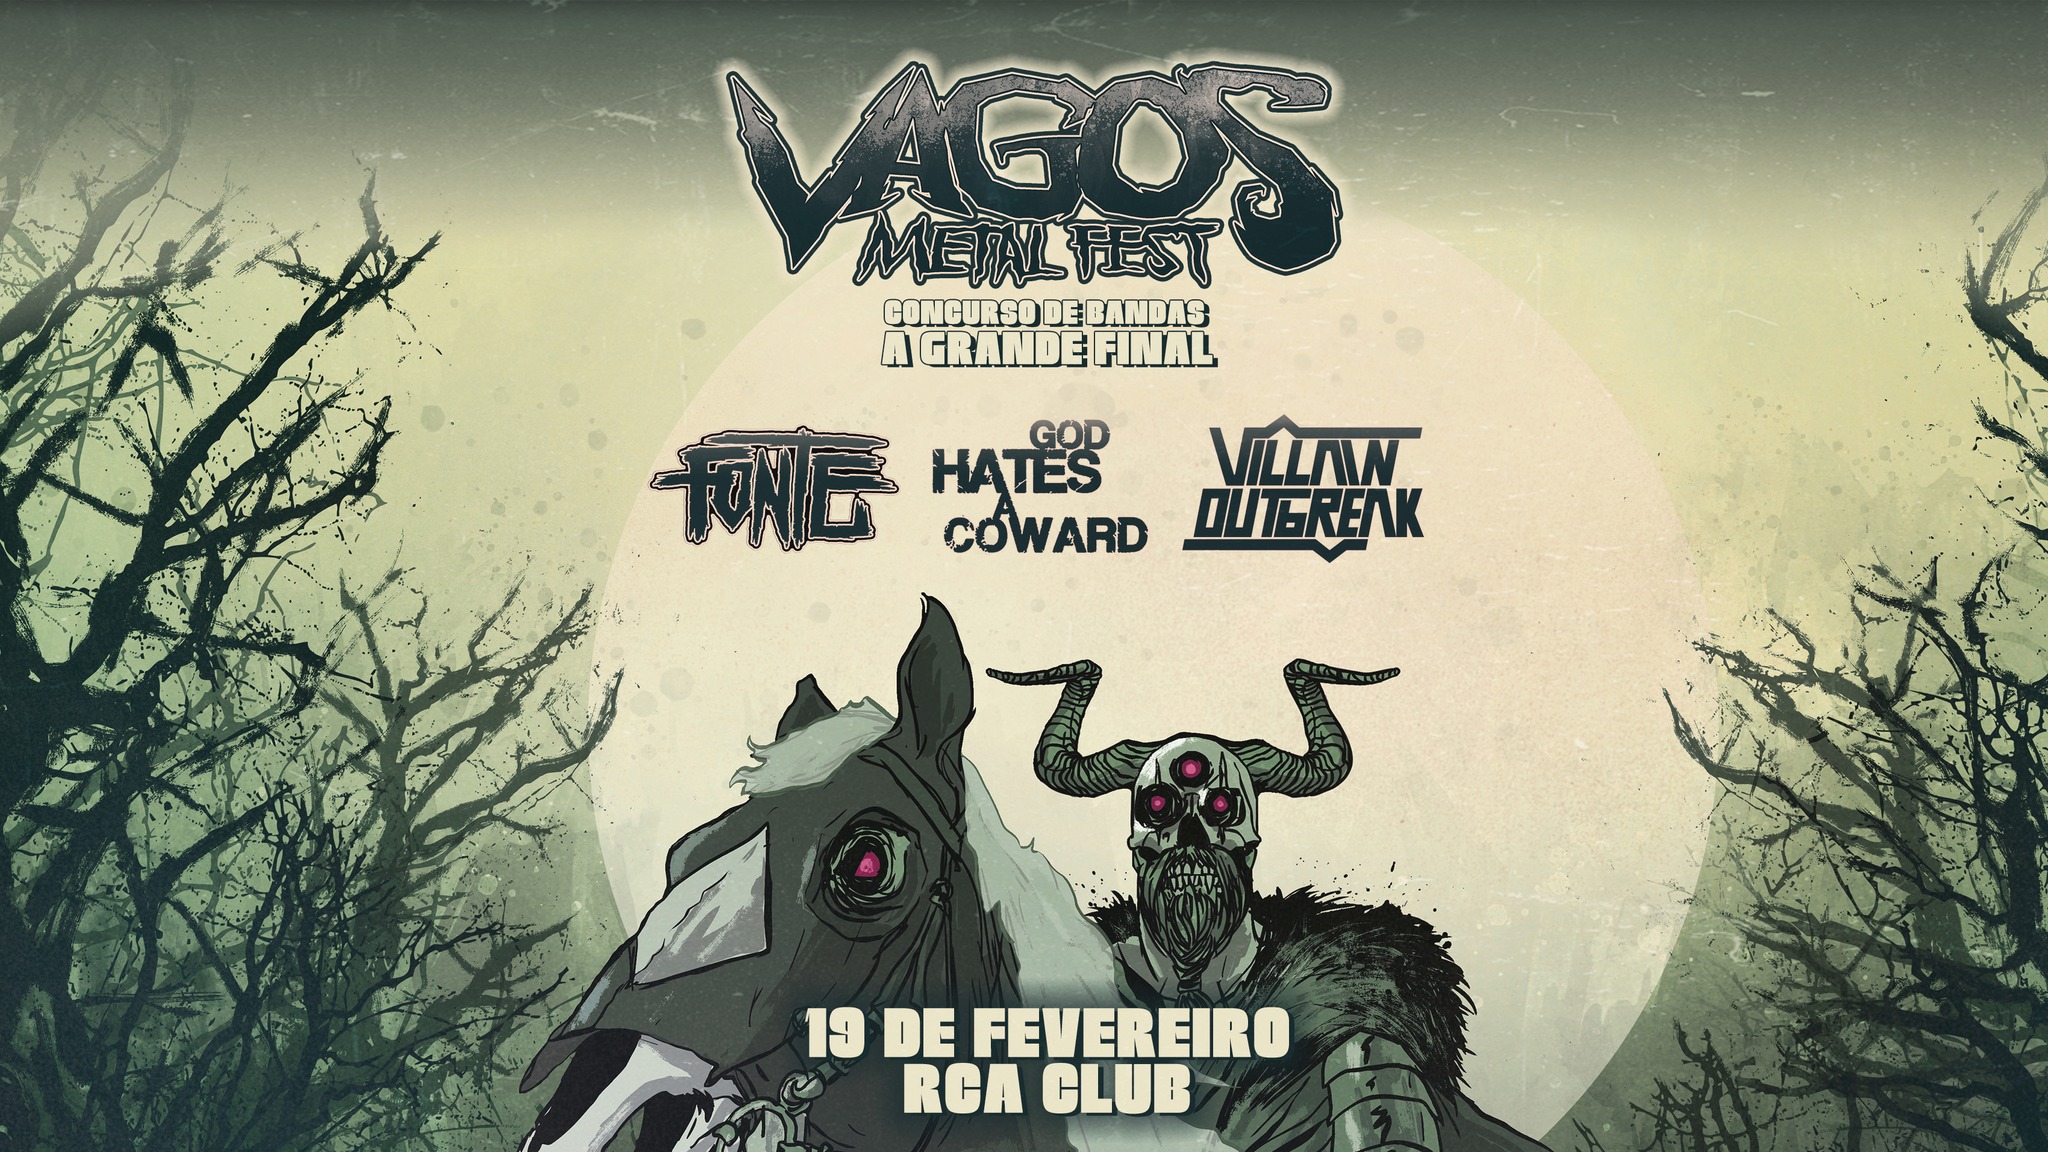 Concurso de bandas Vagos Metal Fest 2022 - A Grande Final